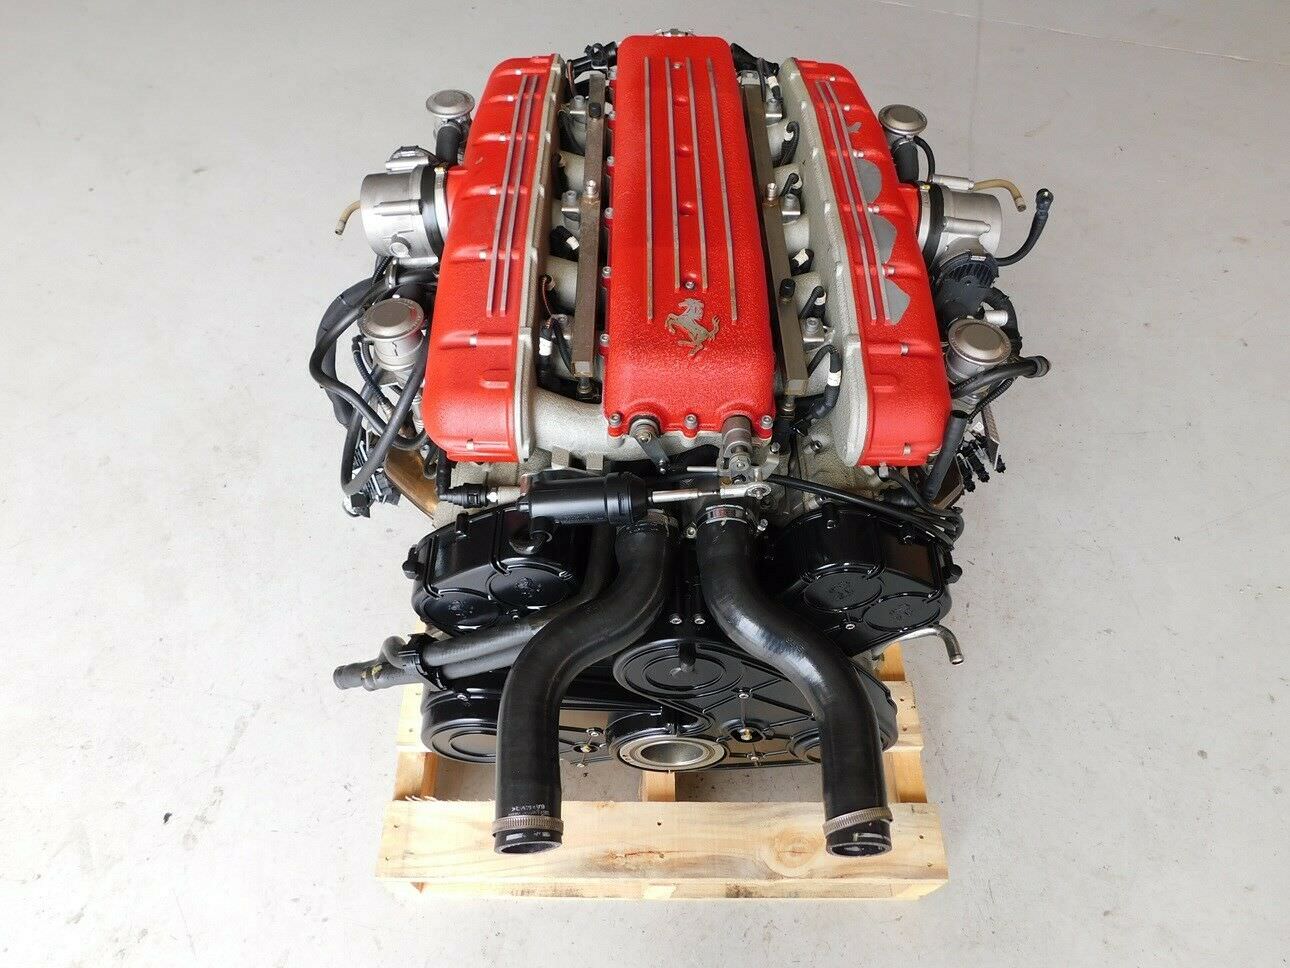 There's A 533hp Ferrari 612 Scaglietti V12 Engine For Sale On eBay